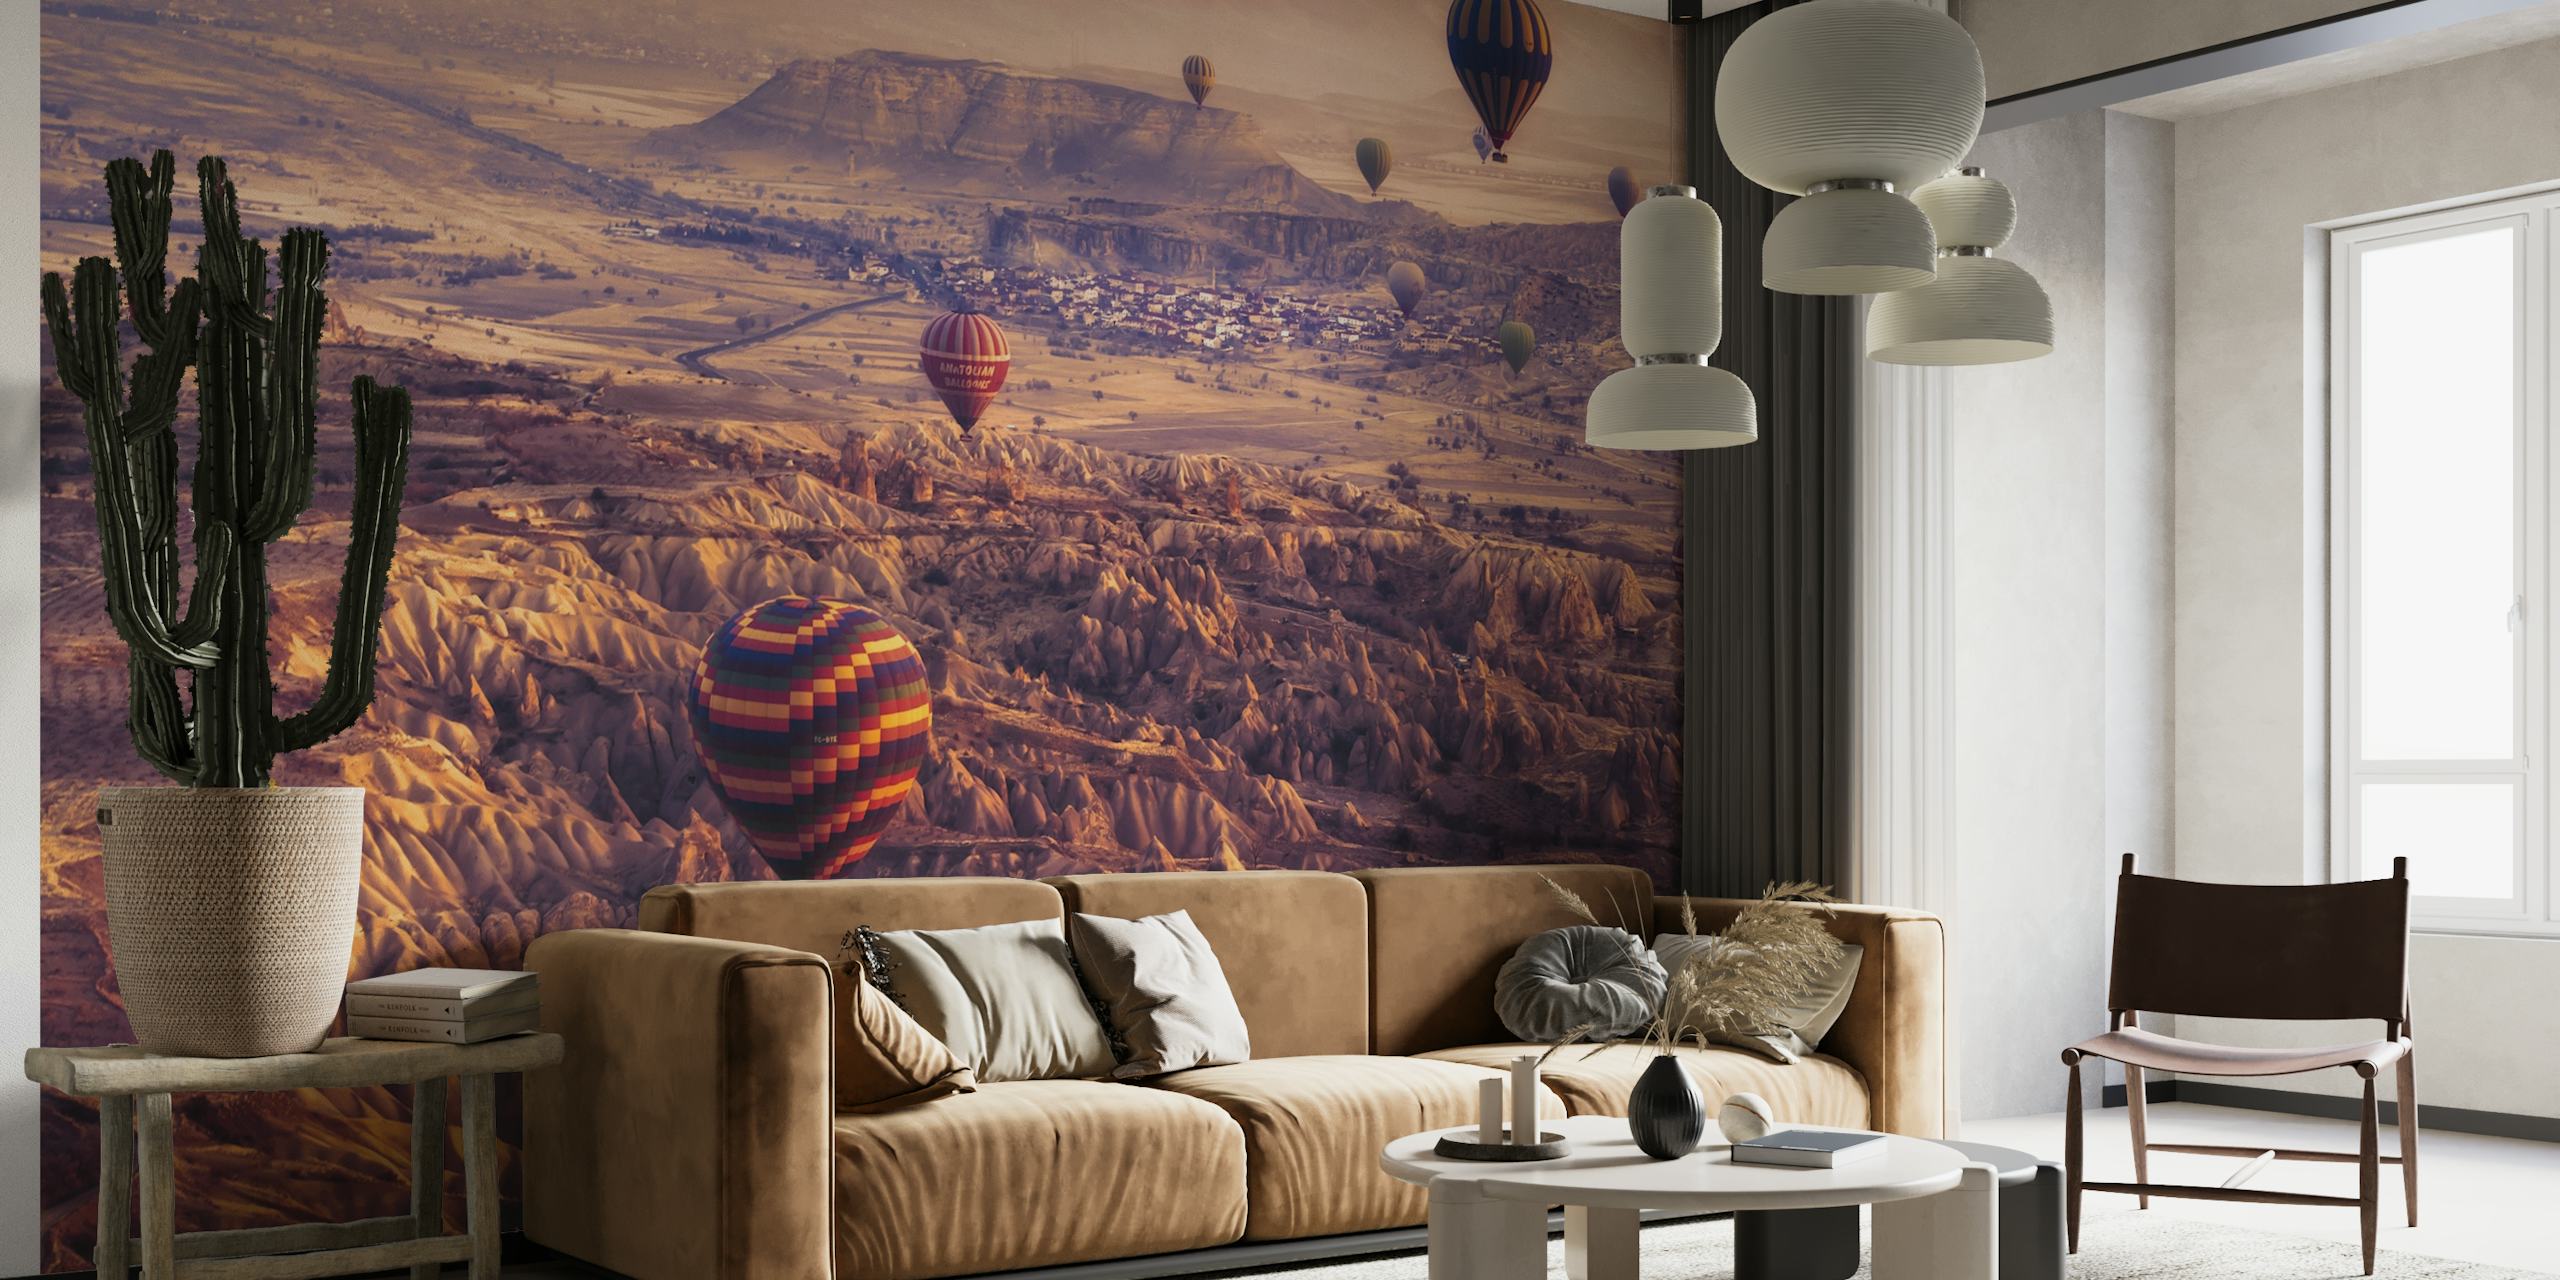 Heteluchtballonnen over schilderachtig landschapsmuurschildering